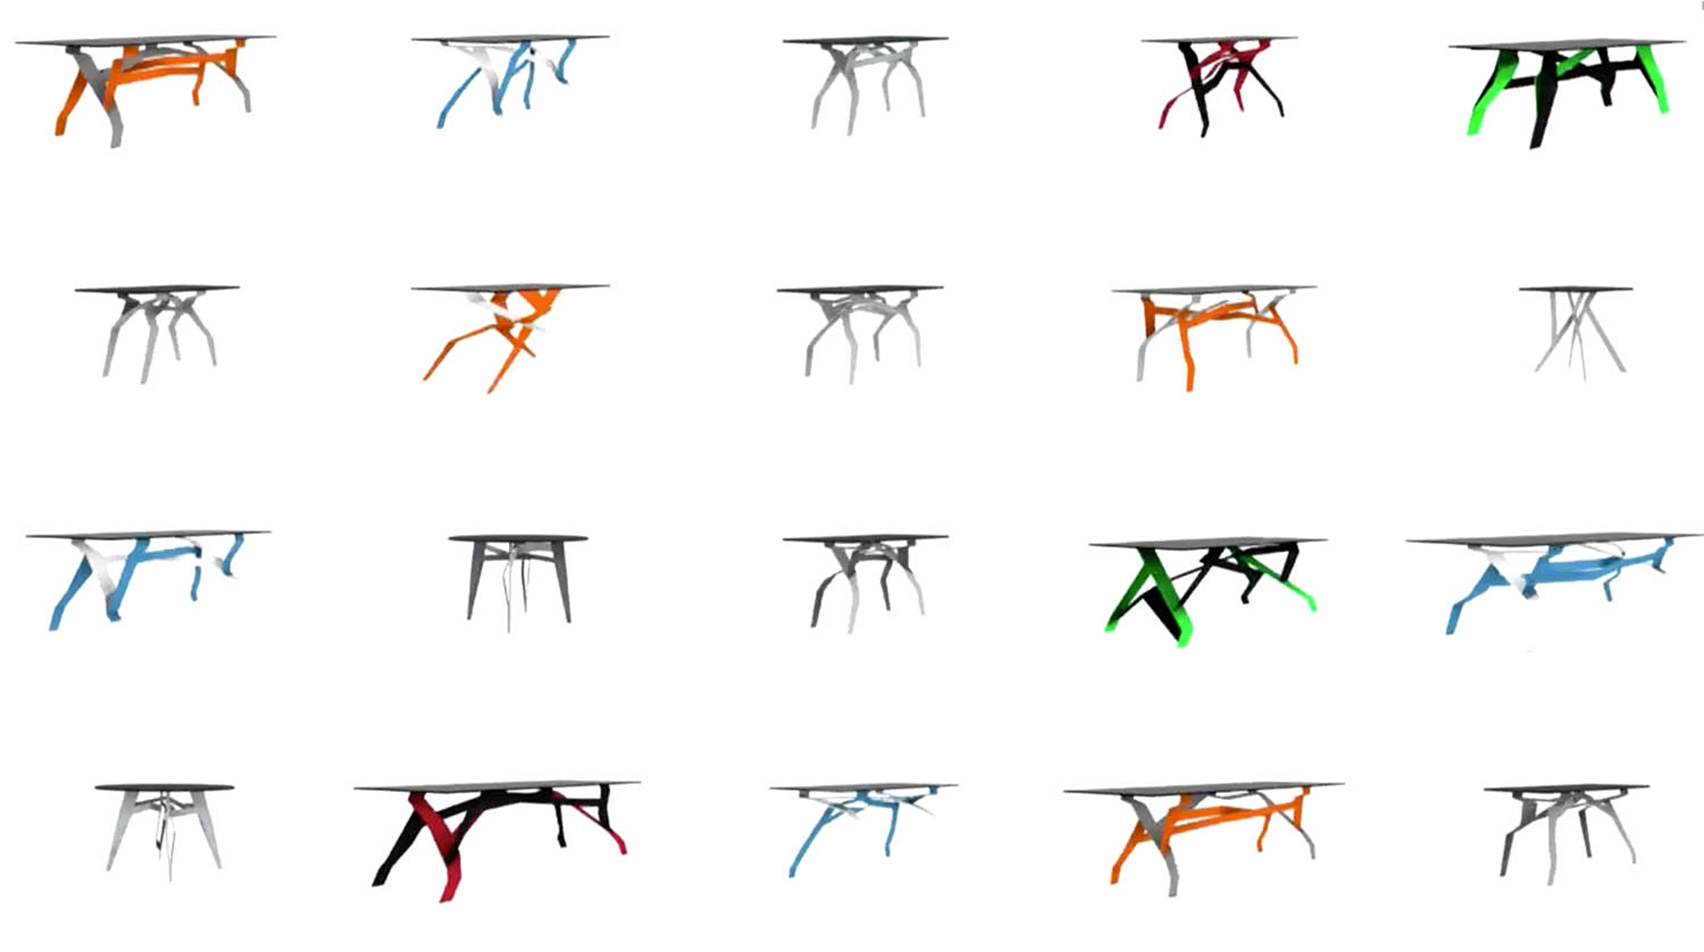 Breeding Tables by Kram/Weisshaar